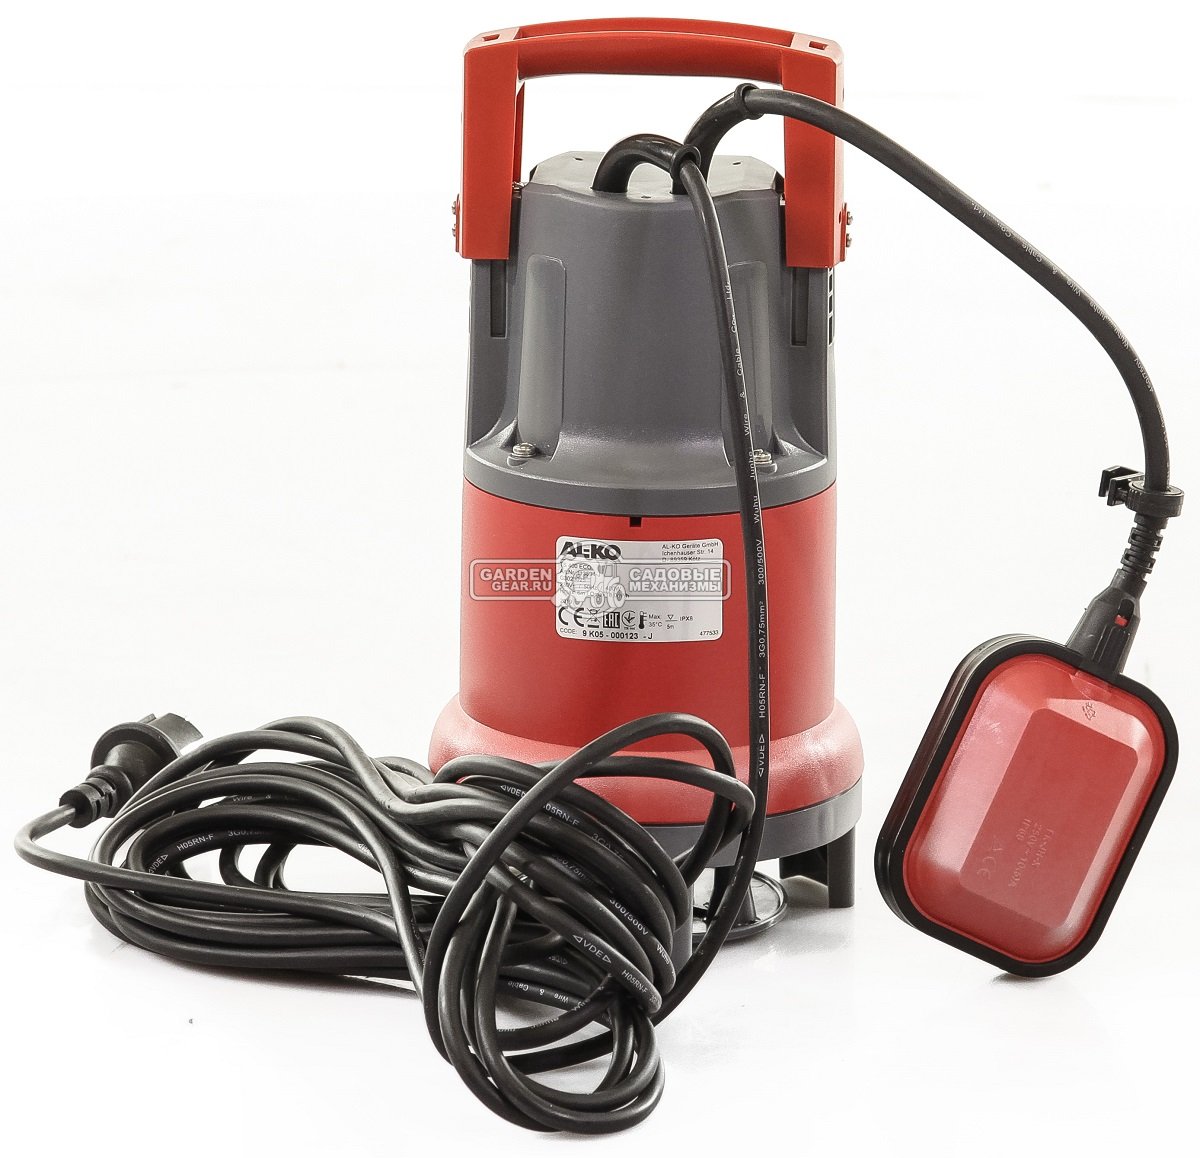 Дренажный насос Al-ko TS 400 Eco для грязной воды (PRC, 451 Вт., 6 м, 8 м3/час, 3,8 кг.)